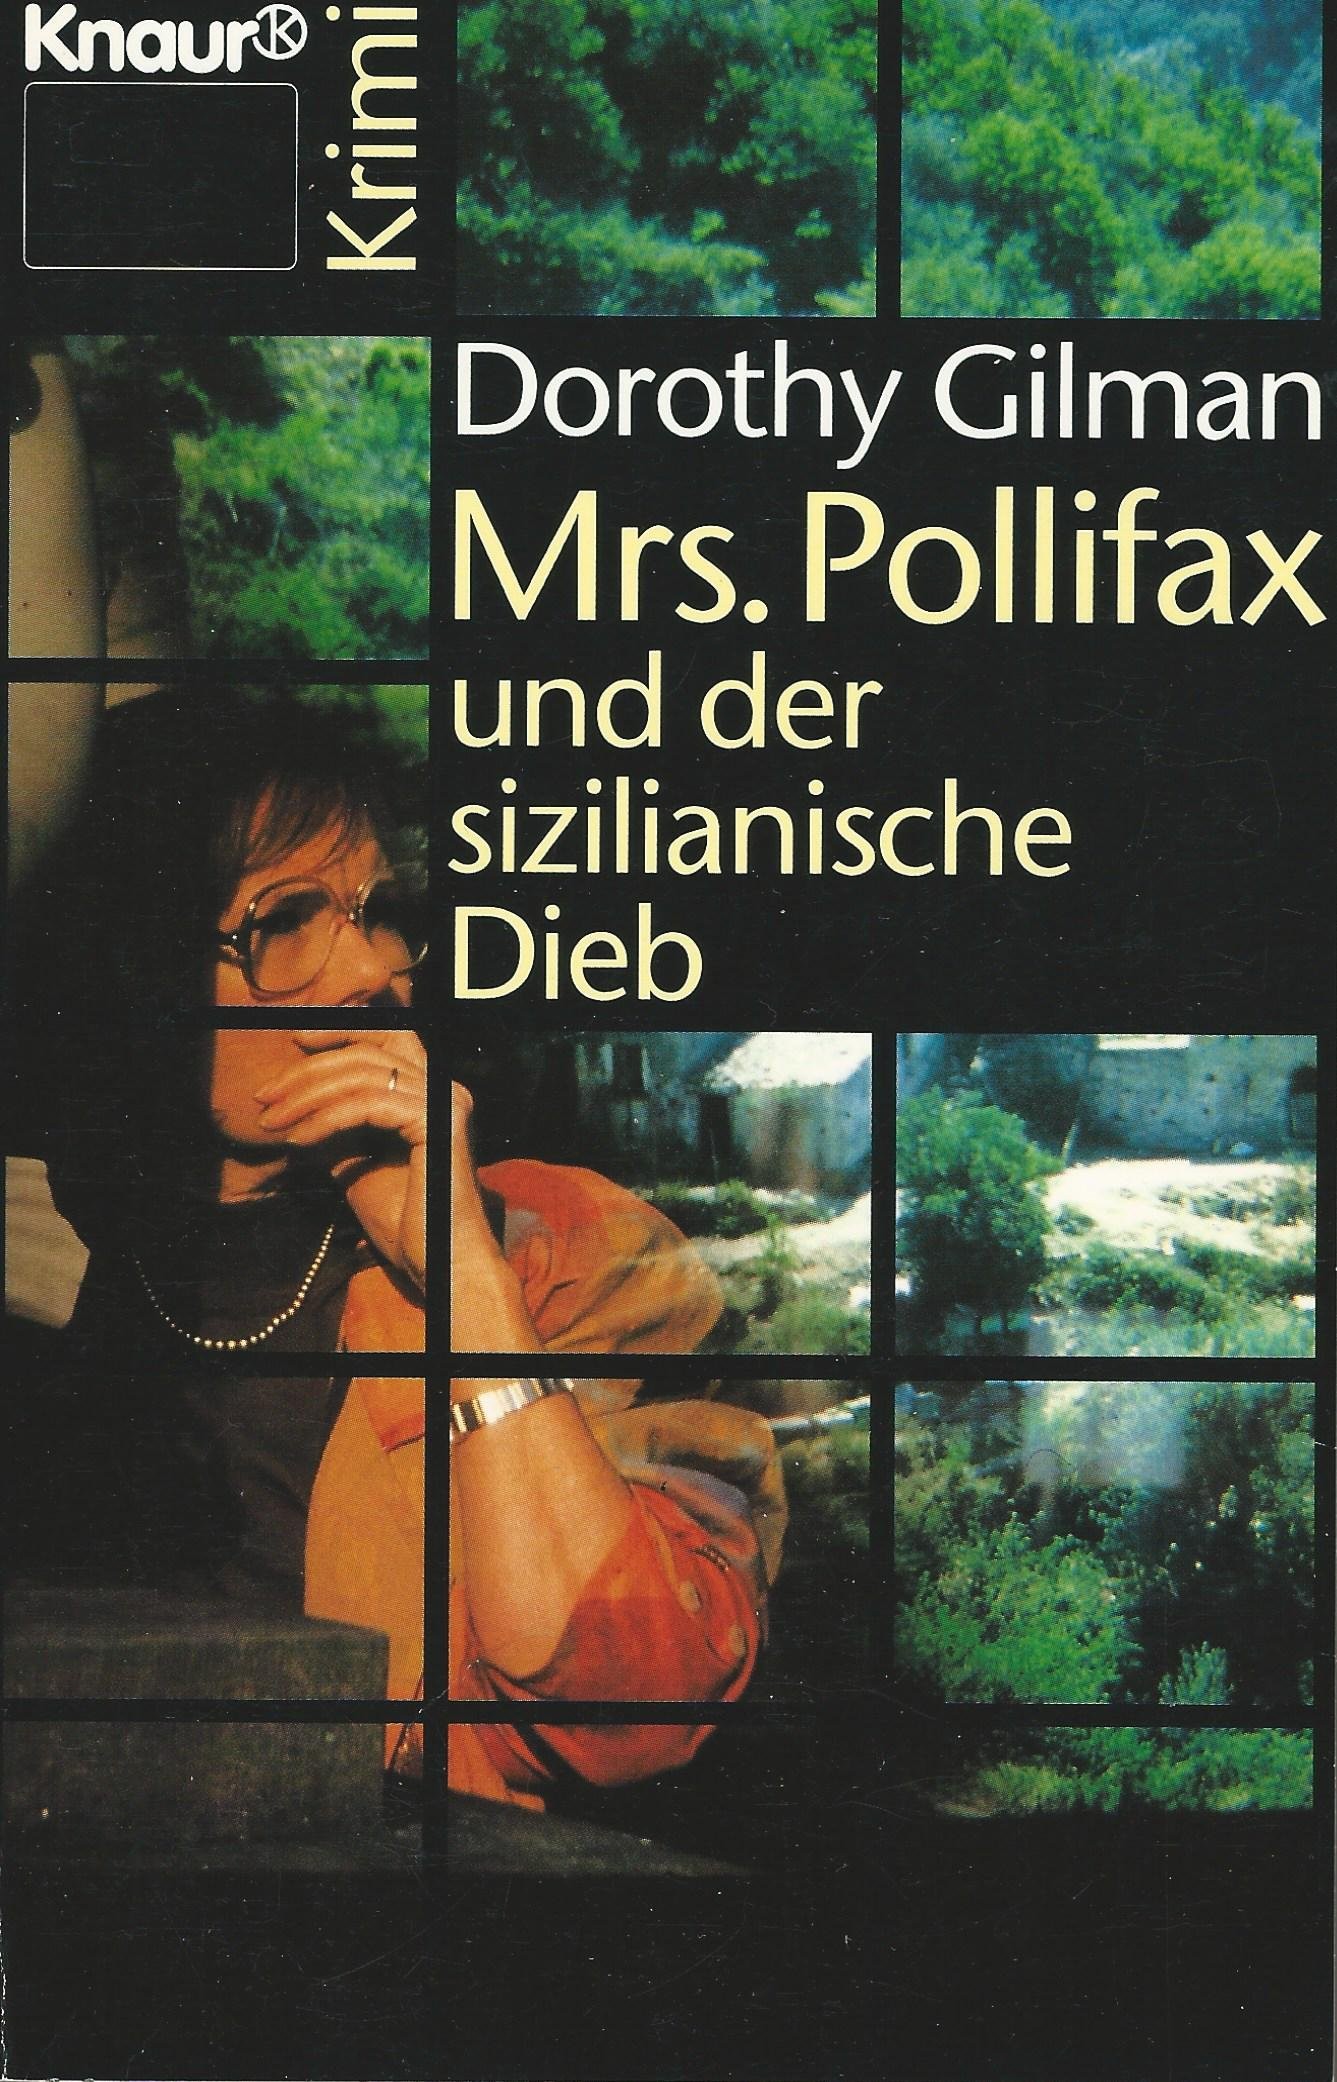 Titelbild zum Buch: Mrs. Pollifax und der sizilianische Dieb